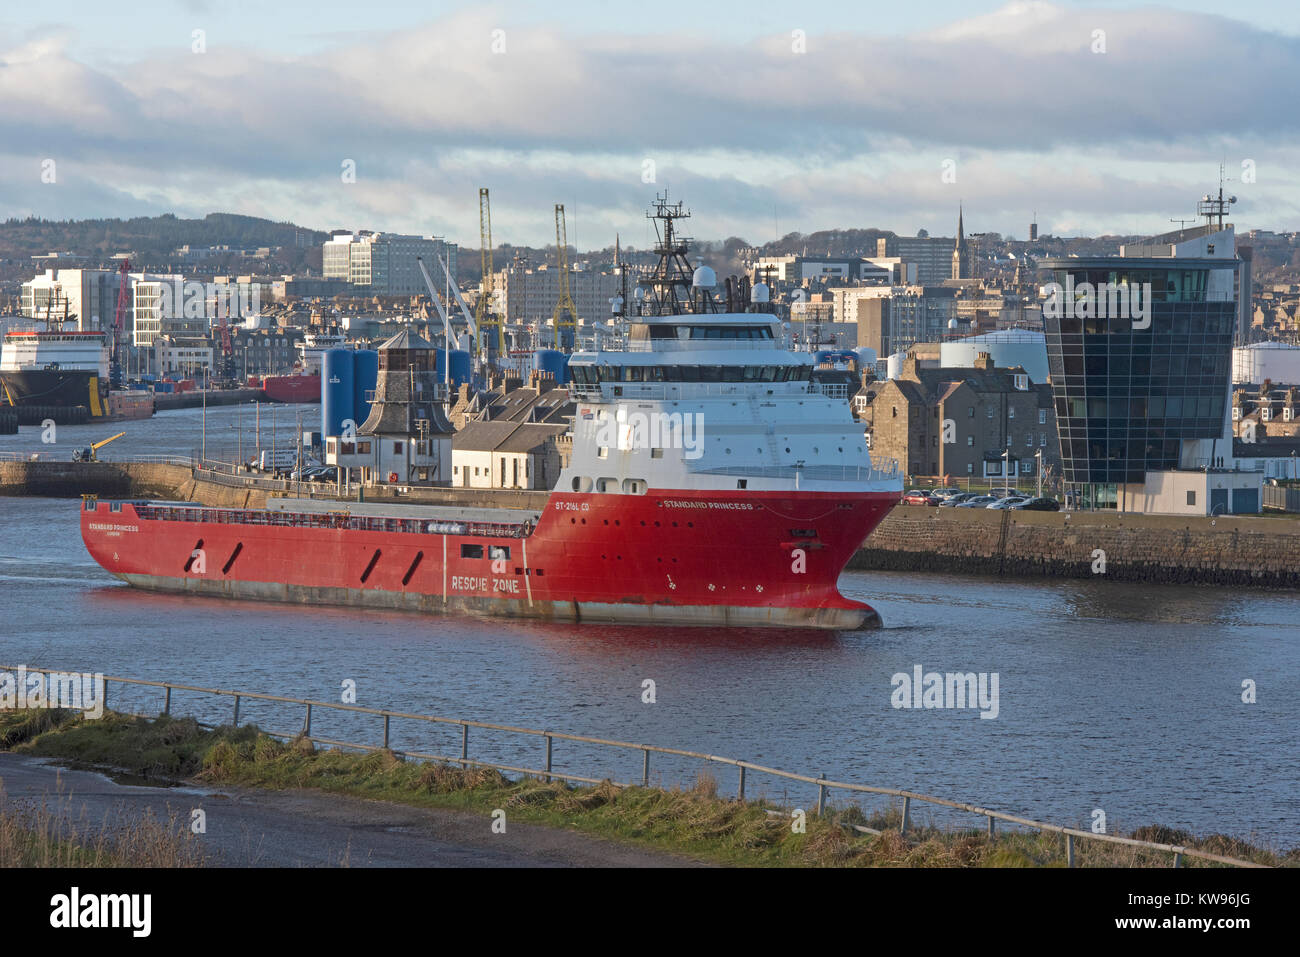 Nordsee Offshore Supply Vessel Verlassen des kommerziellen Hafen von Aberdeen Docks in Grampian Region Schottland Großbritannien. Stockfoto